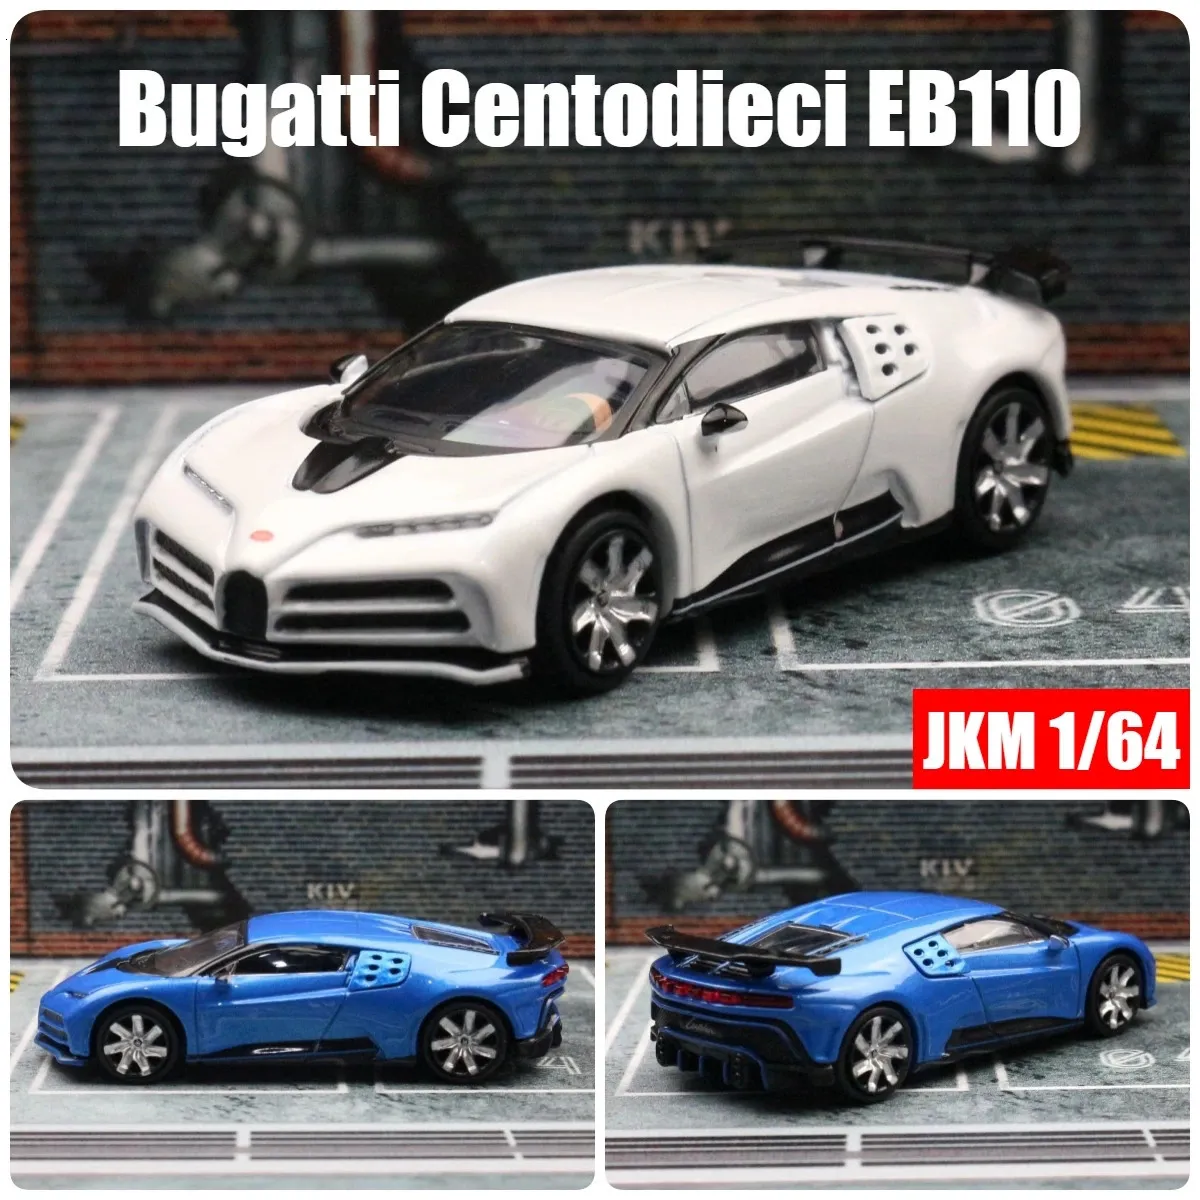 1 64 Bugatti Centodieci EB110 miniatyr leksaksbil 1/64 jkm racing fordonsmodell gratis hjul diecast legering metall samling gåva 240402